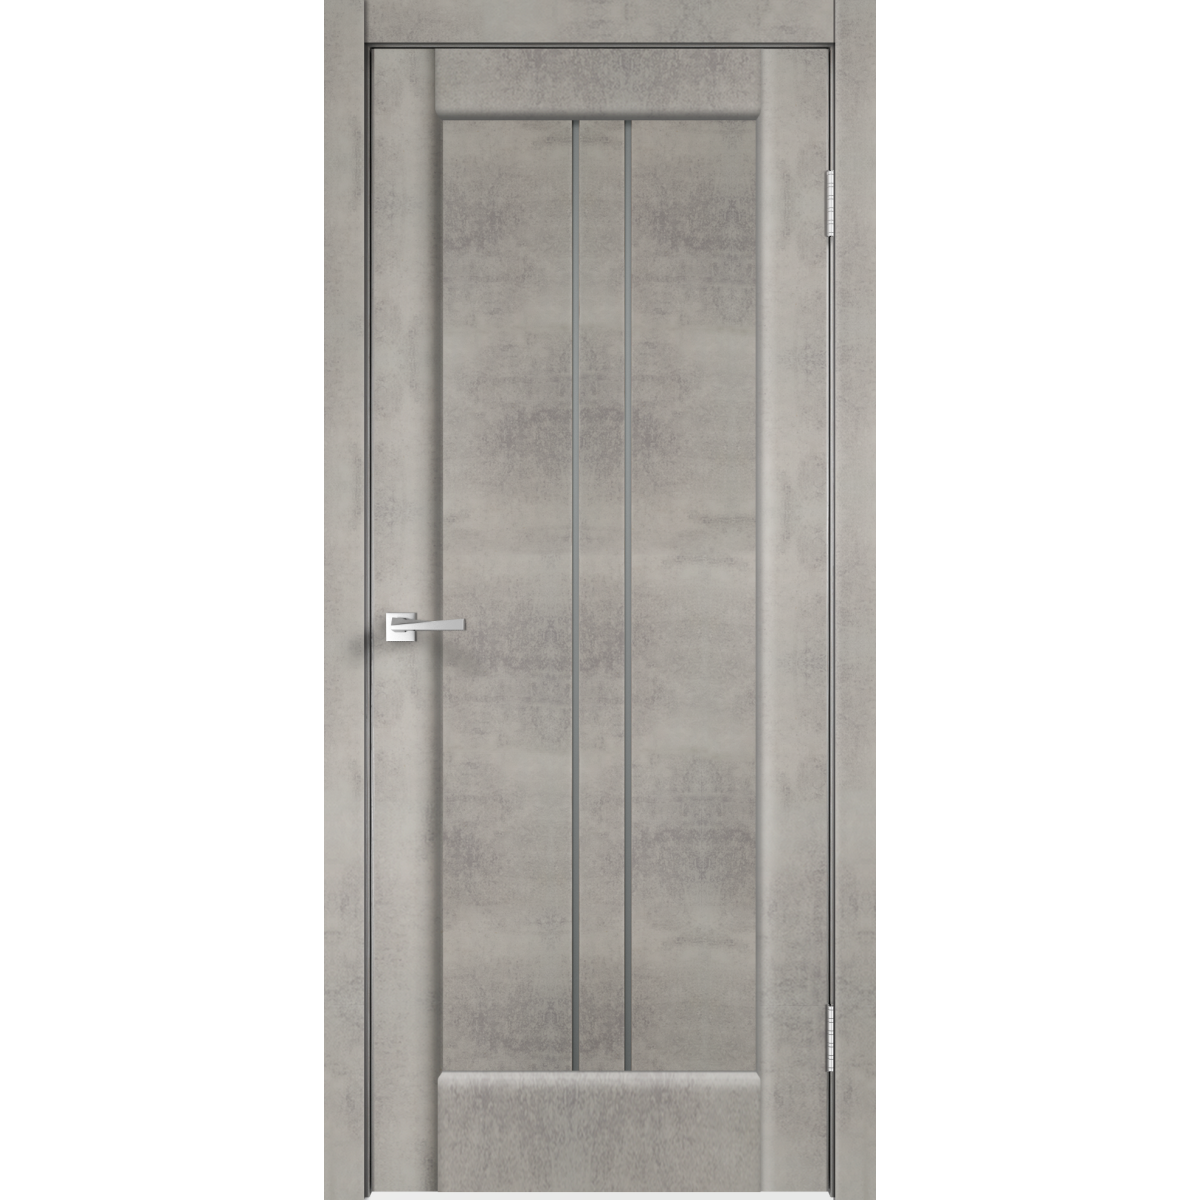 Дверь межкомнатная остеклённая «Сиэтл», 80x200 см, ПВХ, цвет лофт светлый, с фурнитурой